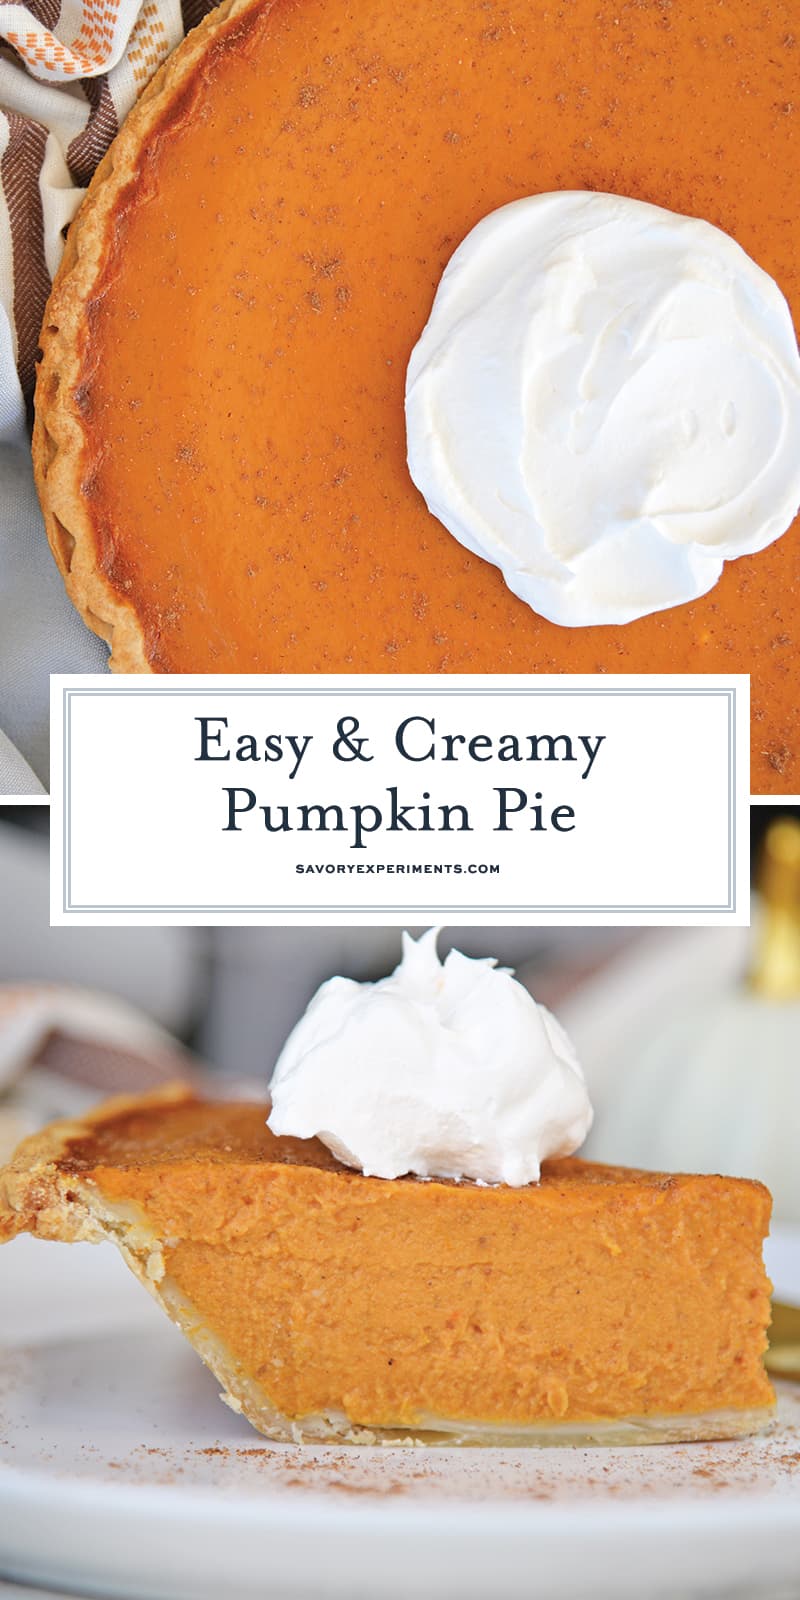 Easy Pumpkin Pie - Pumpkin Pie Recipe with a Secret Ingredient!